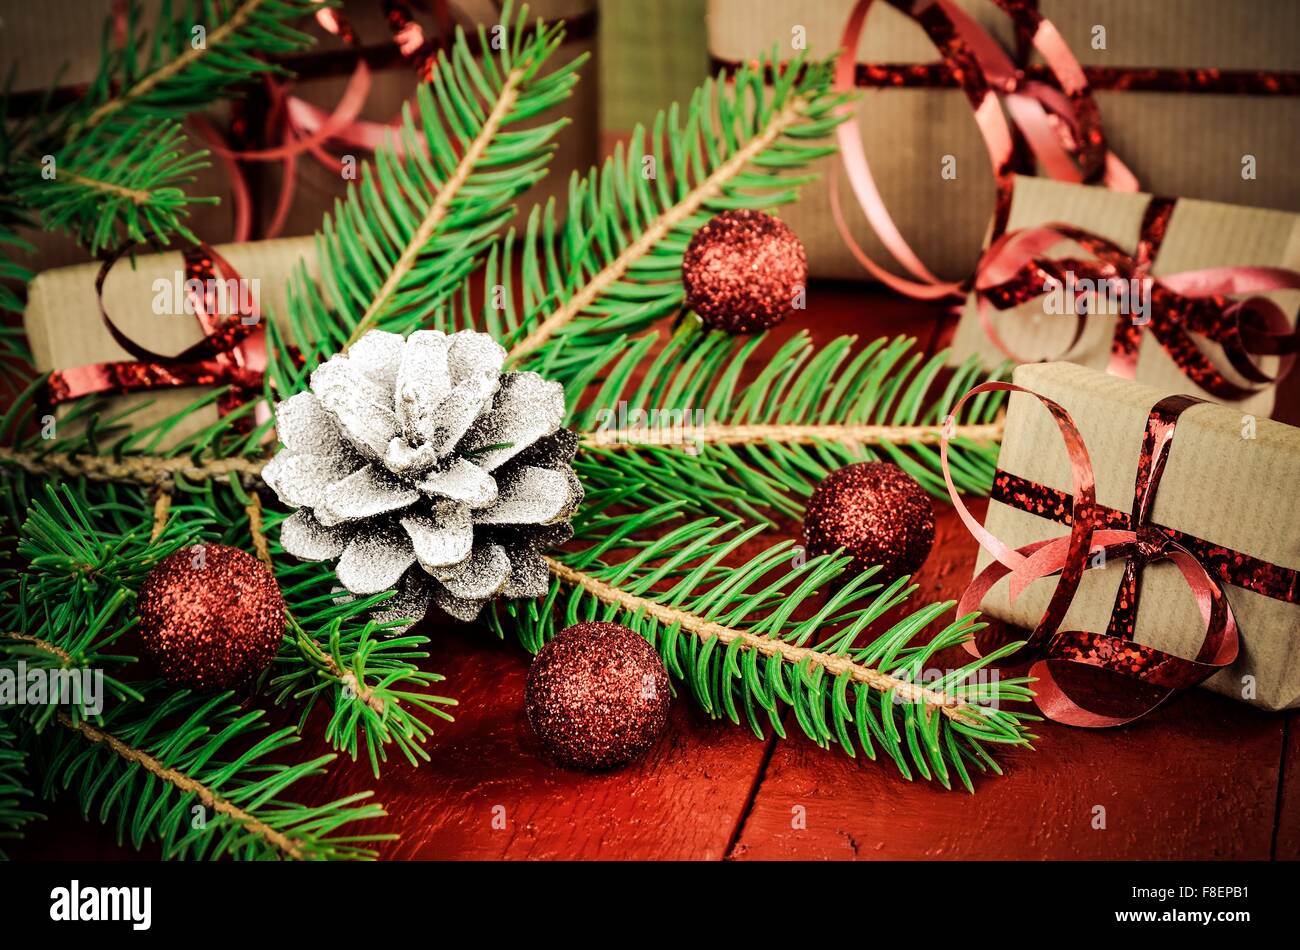 Artículos de decoración y regalos de Navidad. Árbol de Navidad, cono de pino, chucherías y regalos en el fondo. Profundidad de campo. Foto de stock